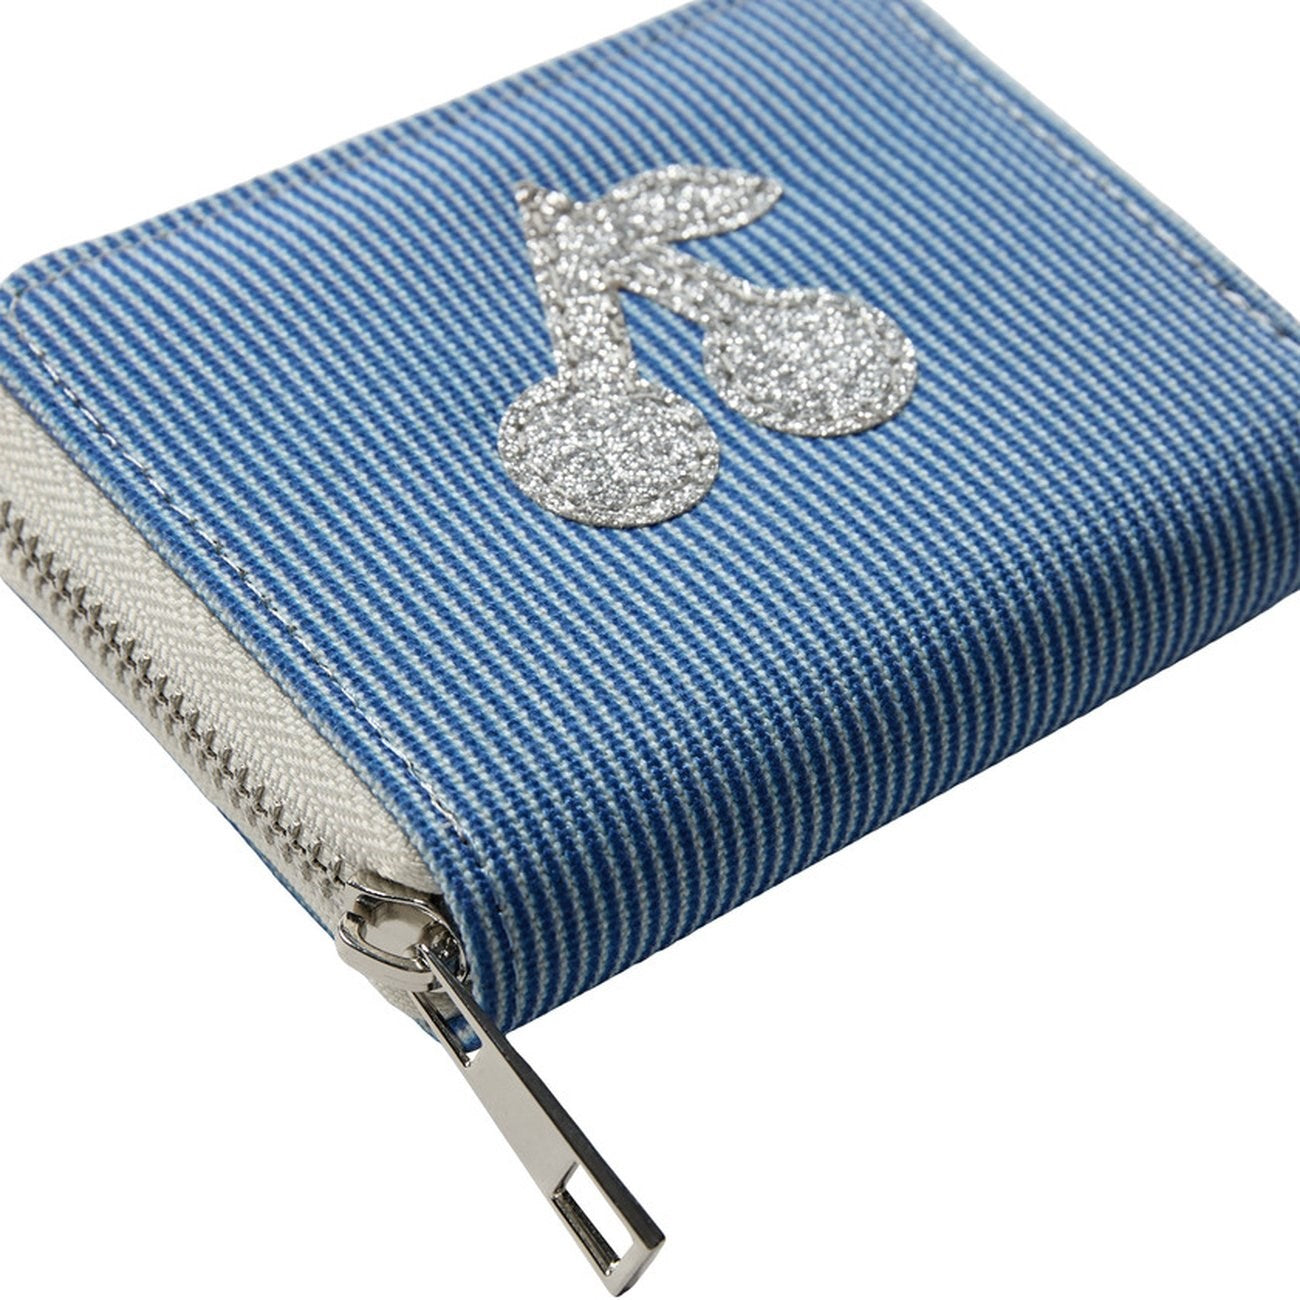 Sofie Schnoor Blue Striped Wallet 2